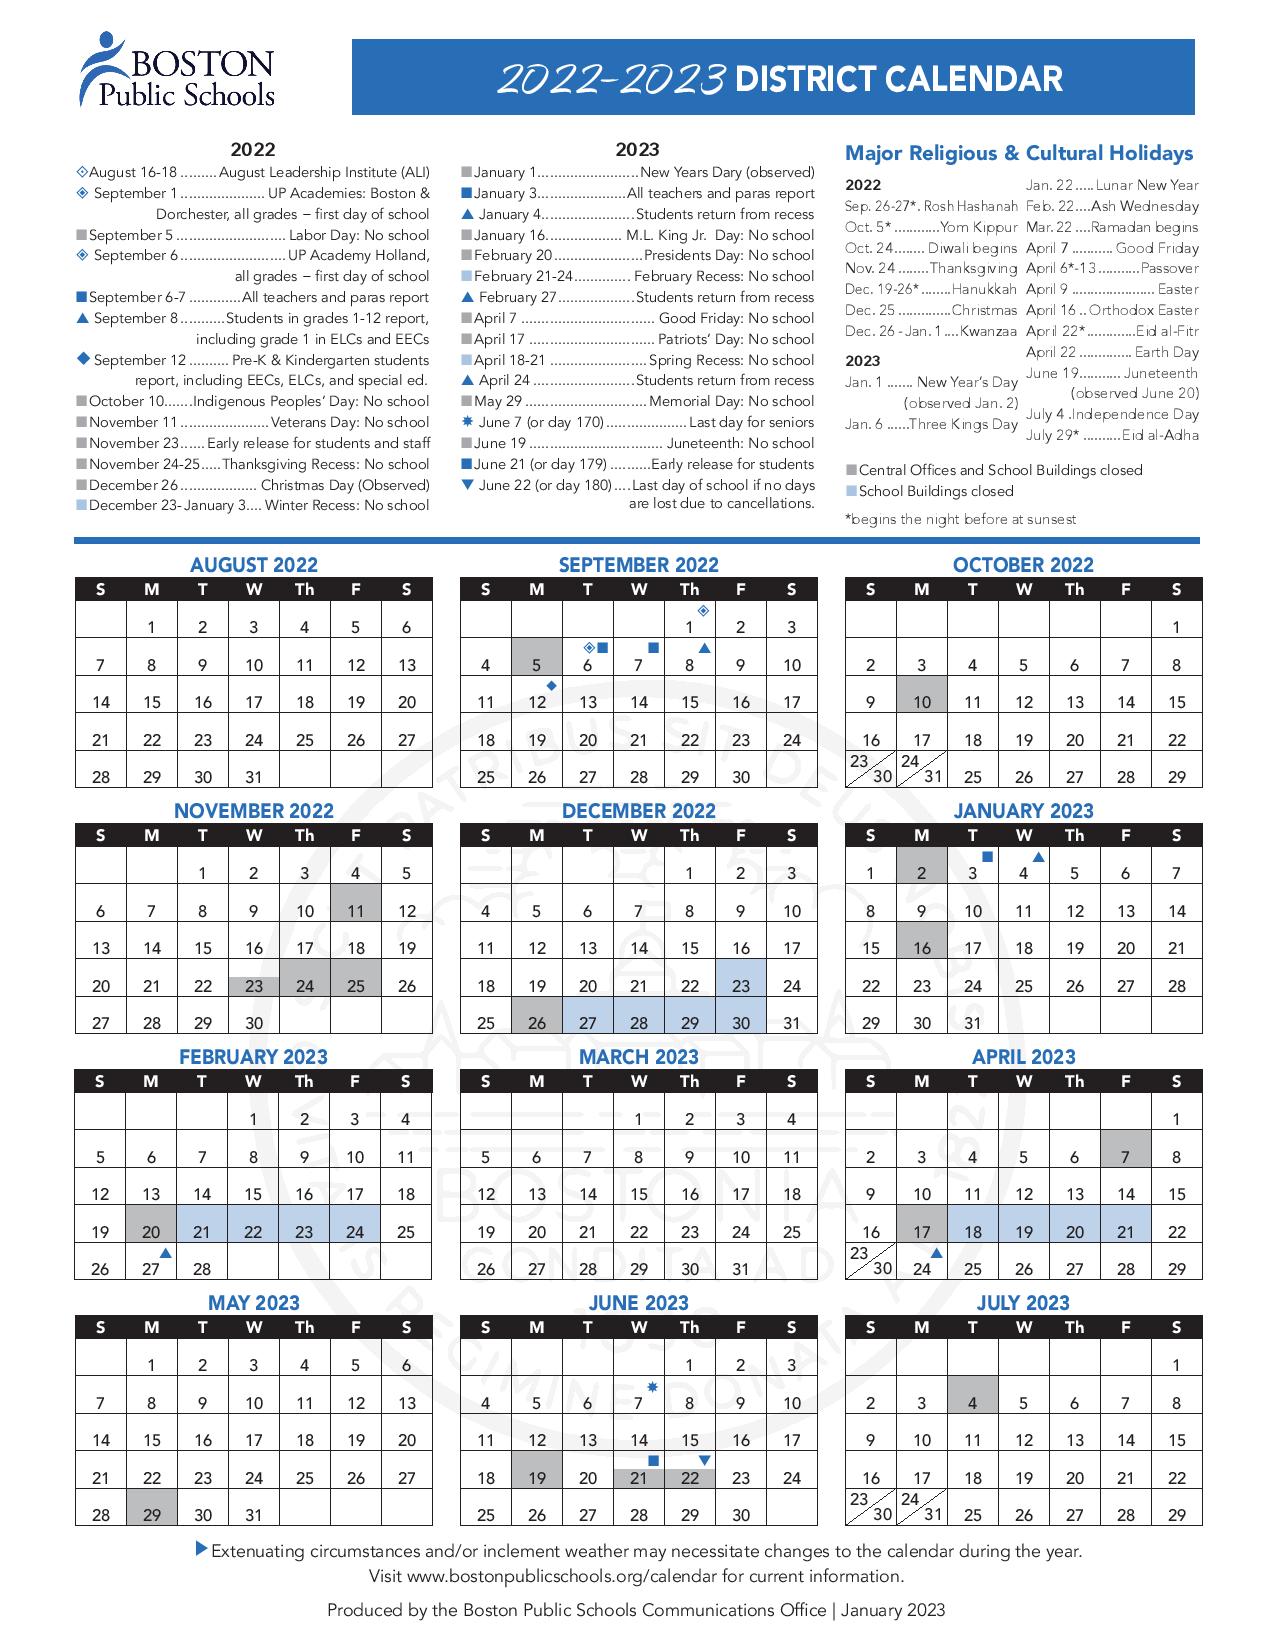 Boston Public Schools Calendar Holidays 2022-2023 PDF